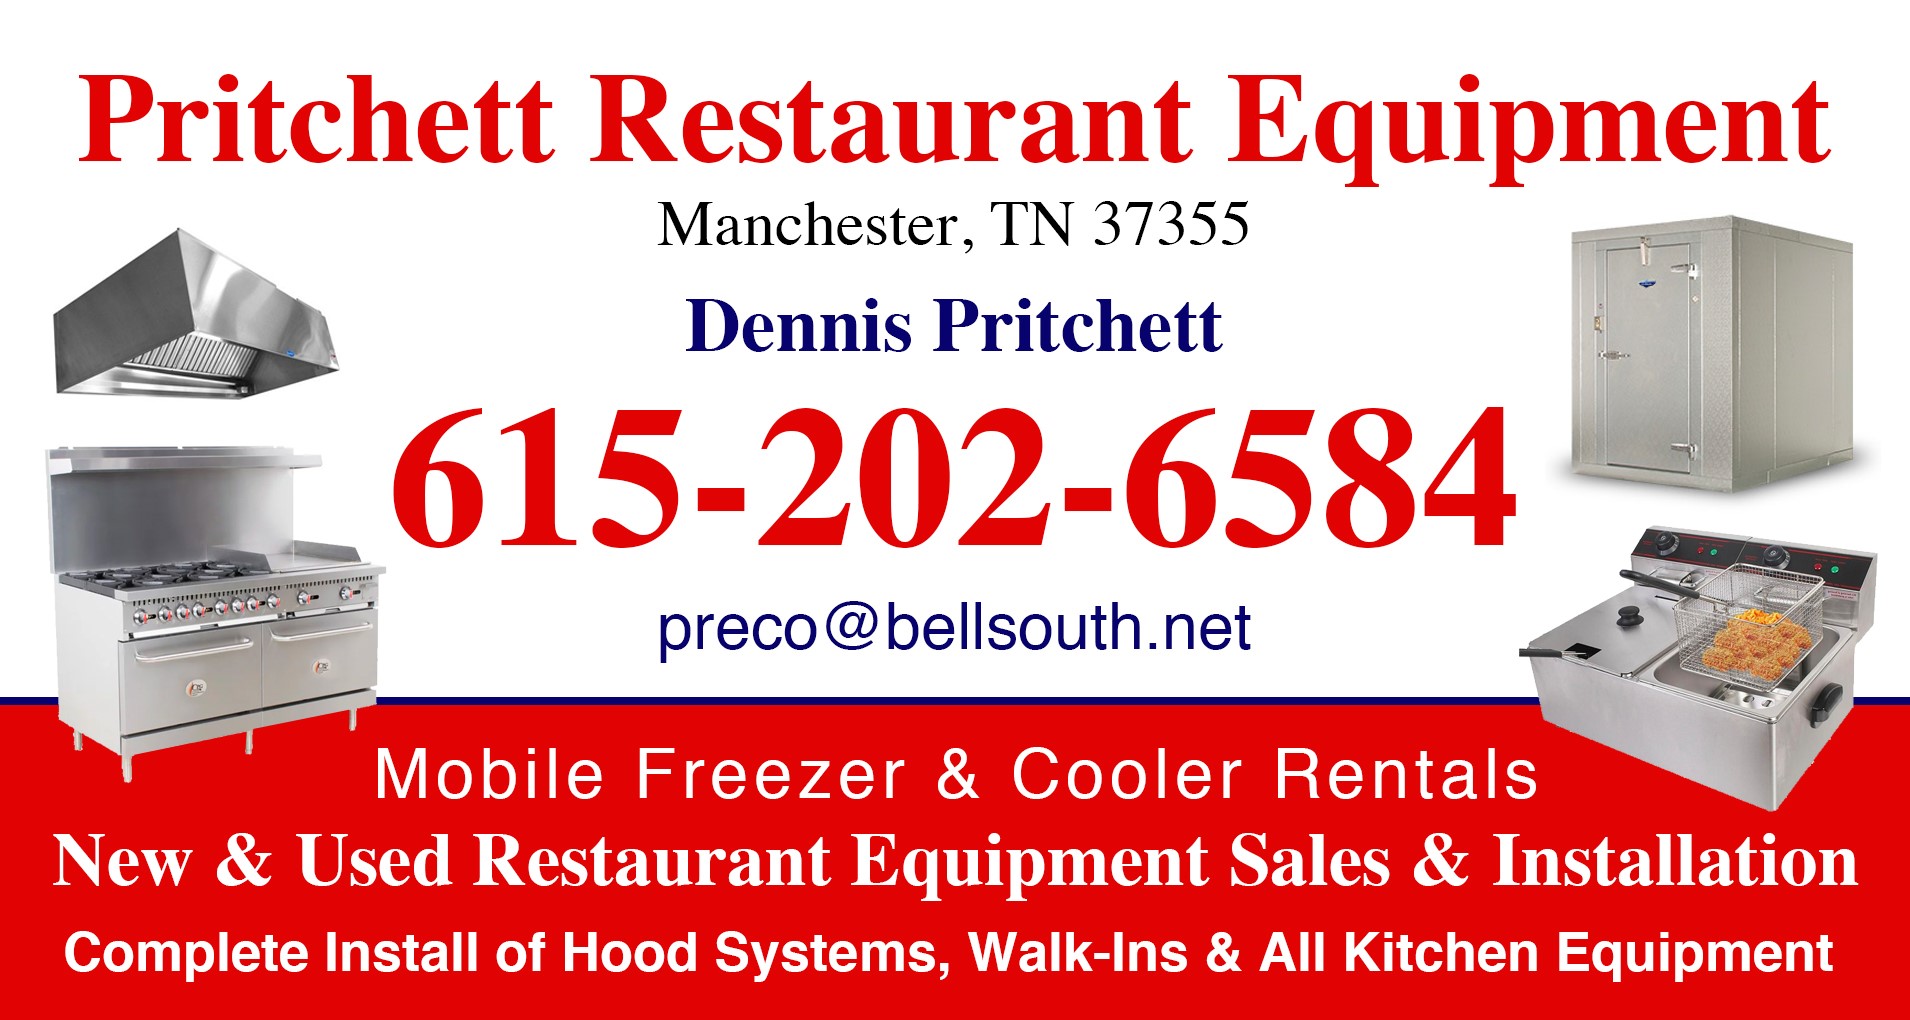 Pritchett Restaurant Equipment